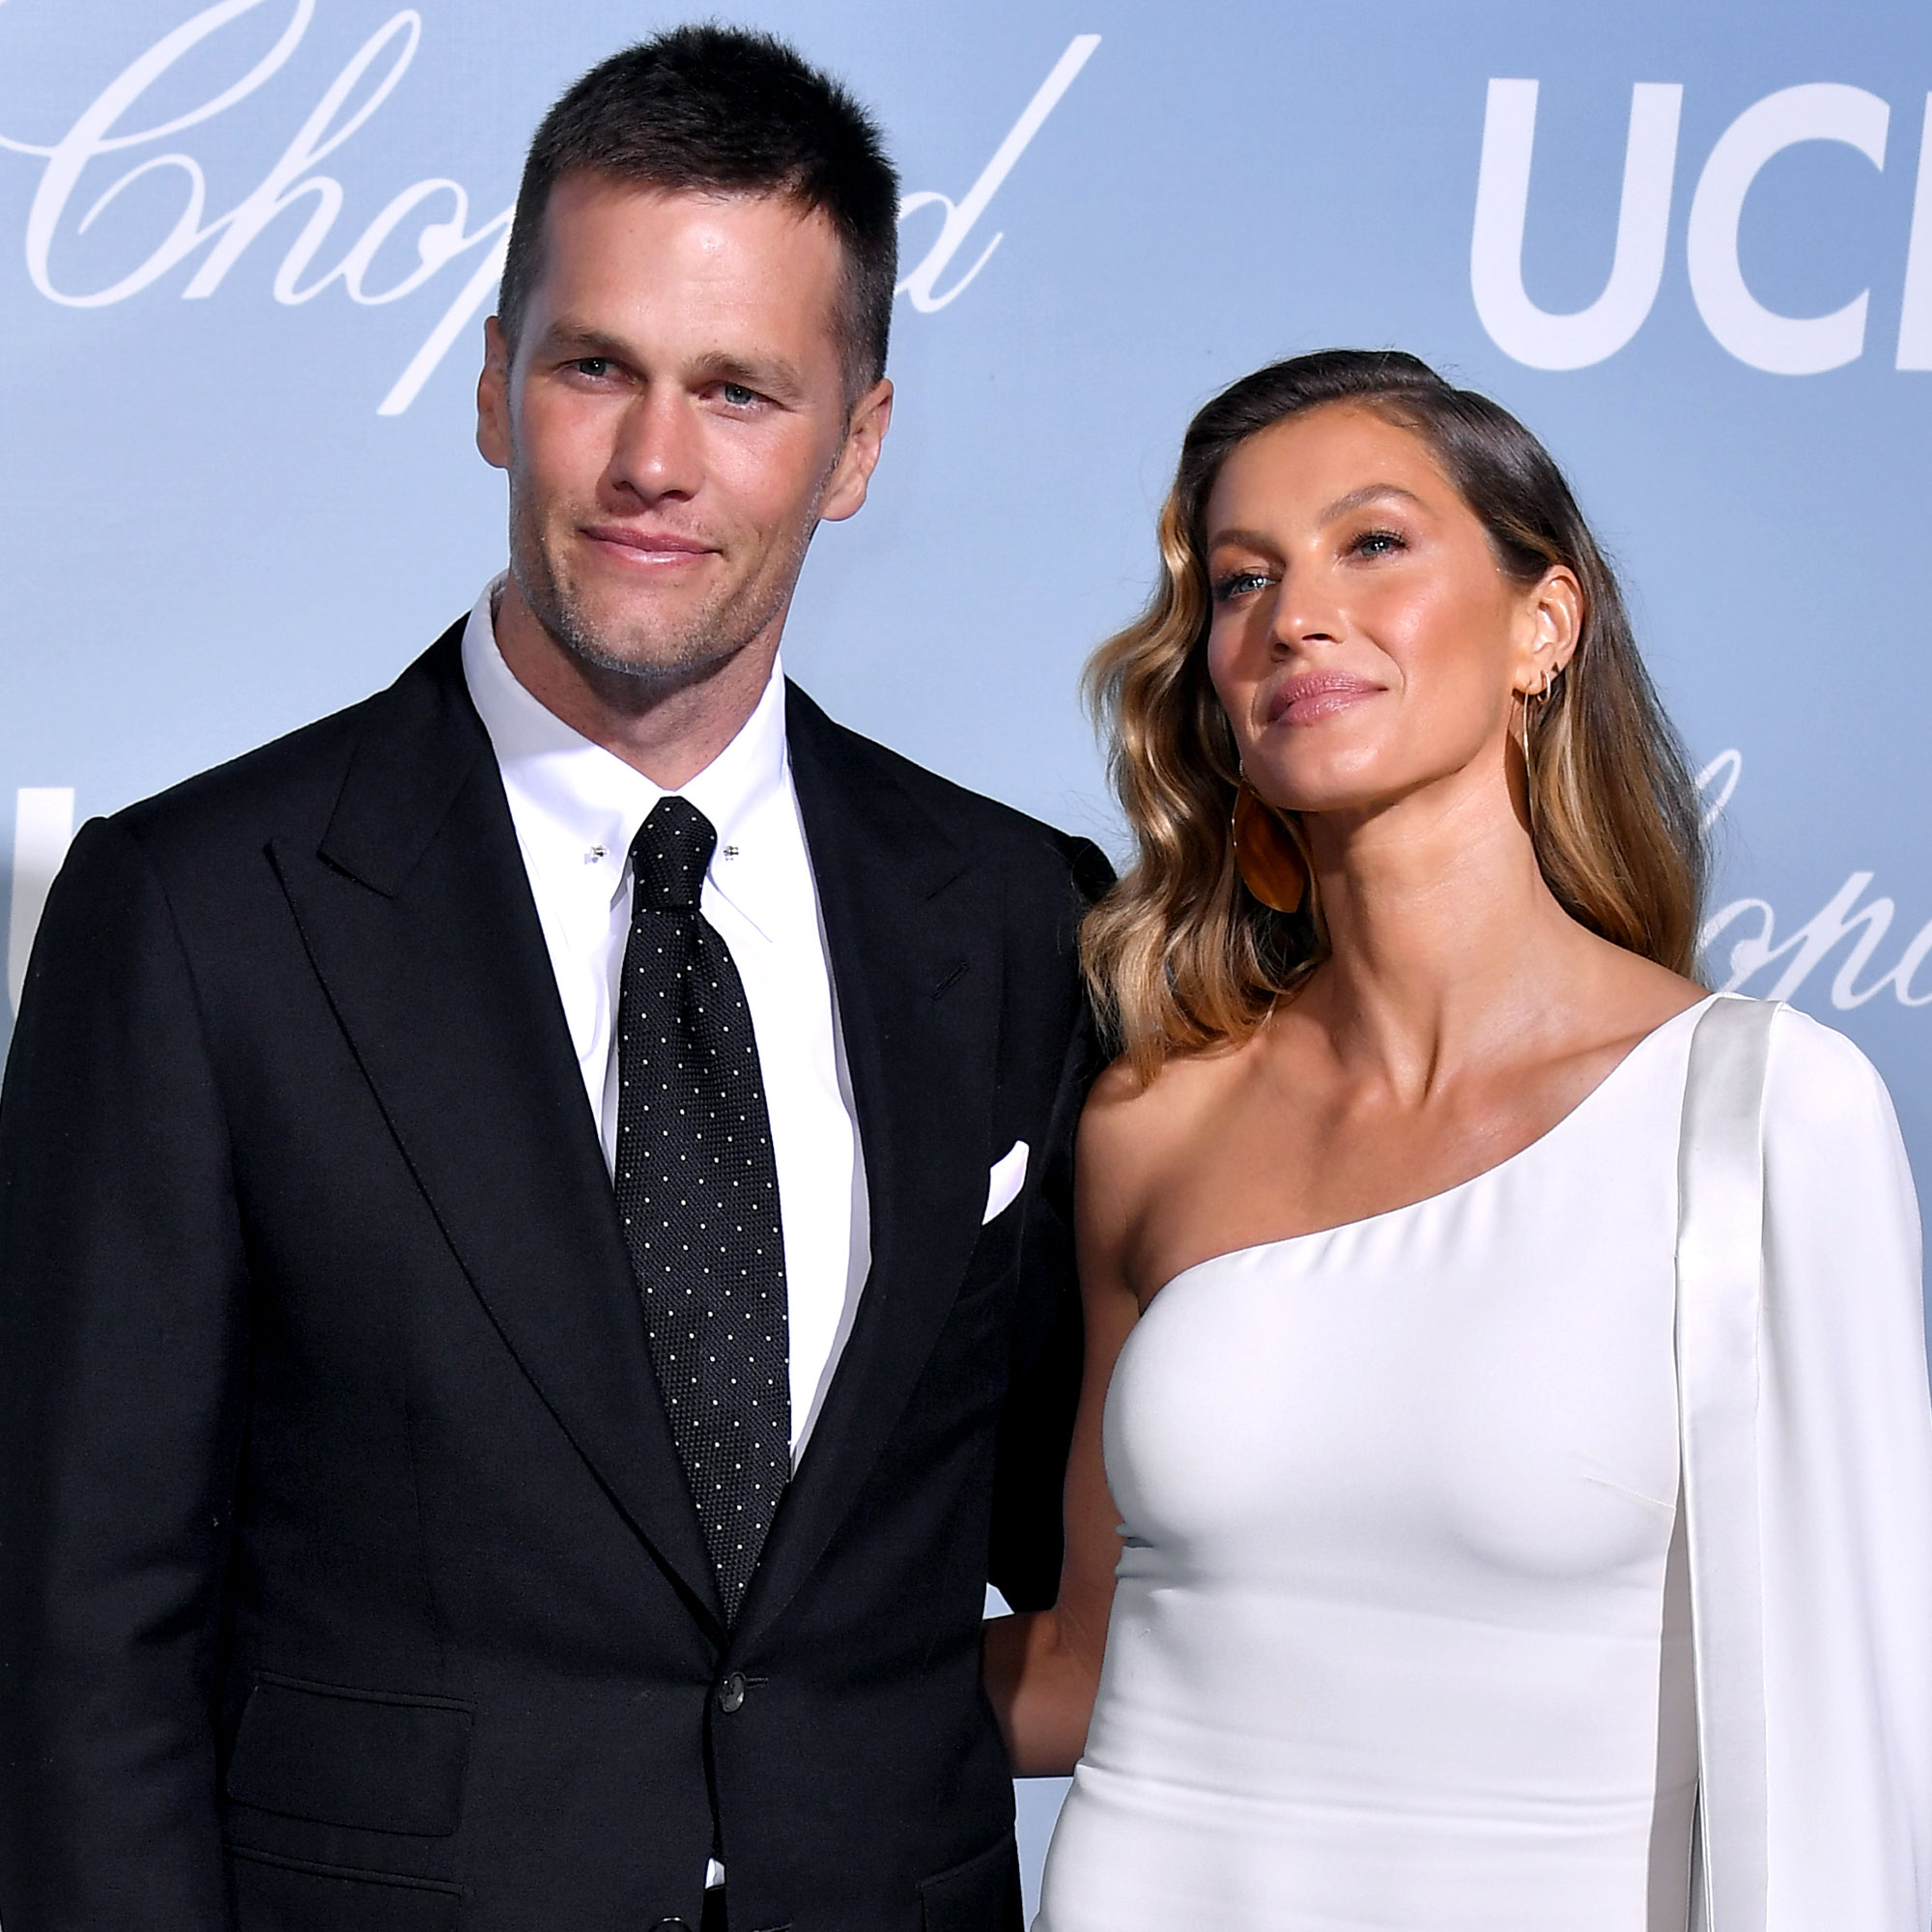 Tom Brady and Gisele Bundchen Are Living Apart Amid Split Rumors